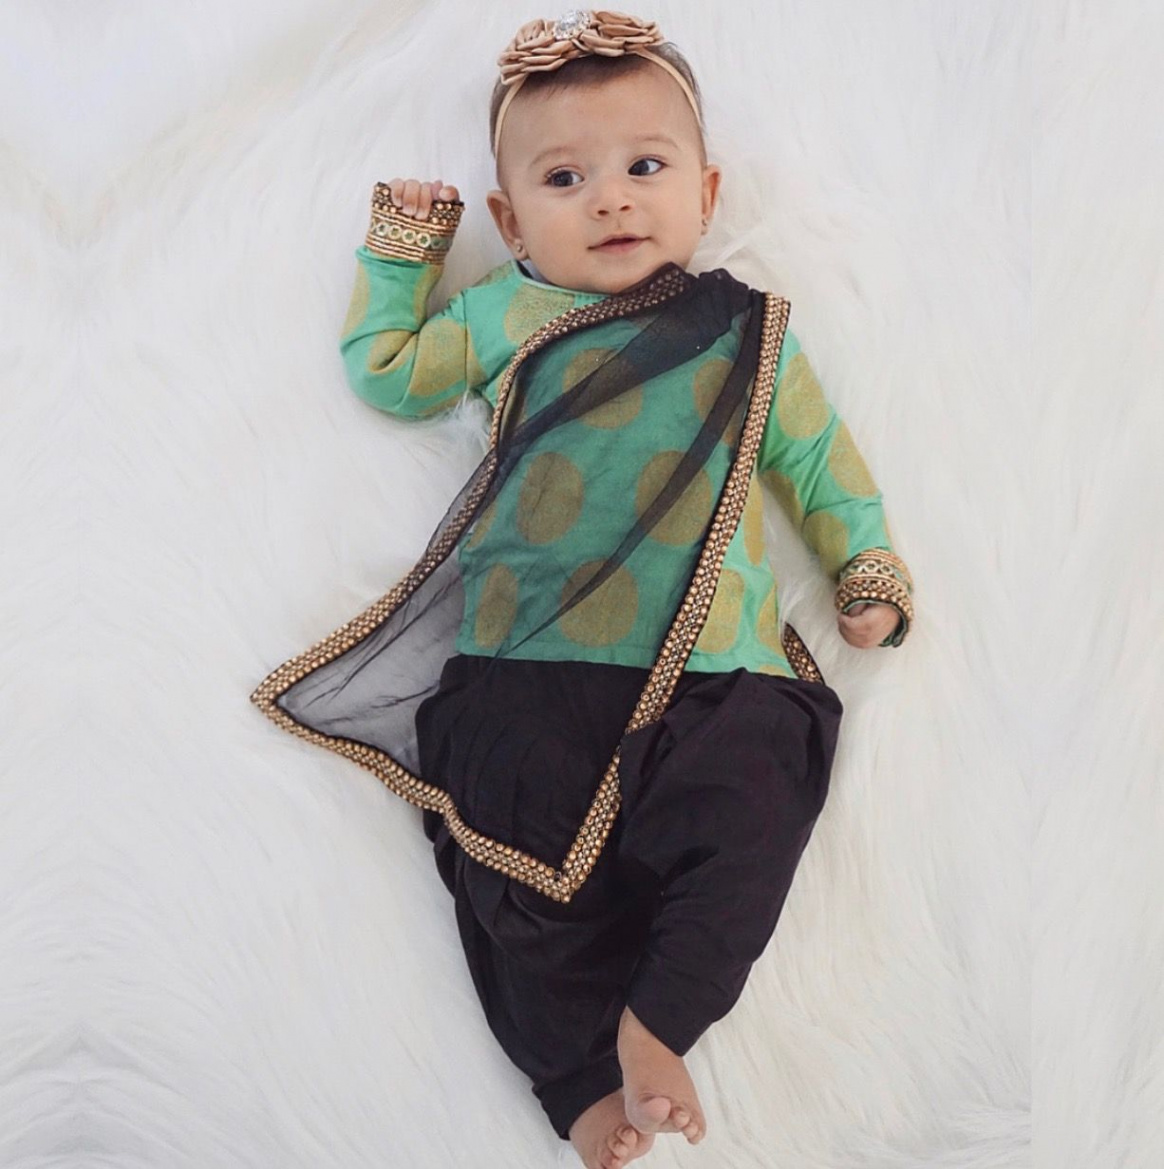 Custom baby outfit made by Lashkaraa